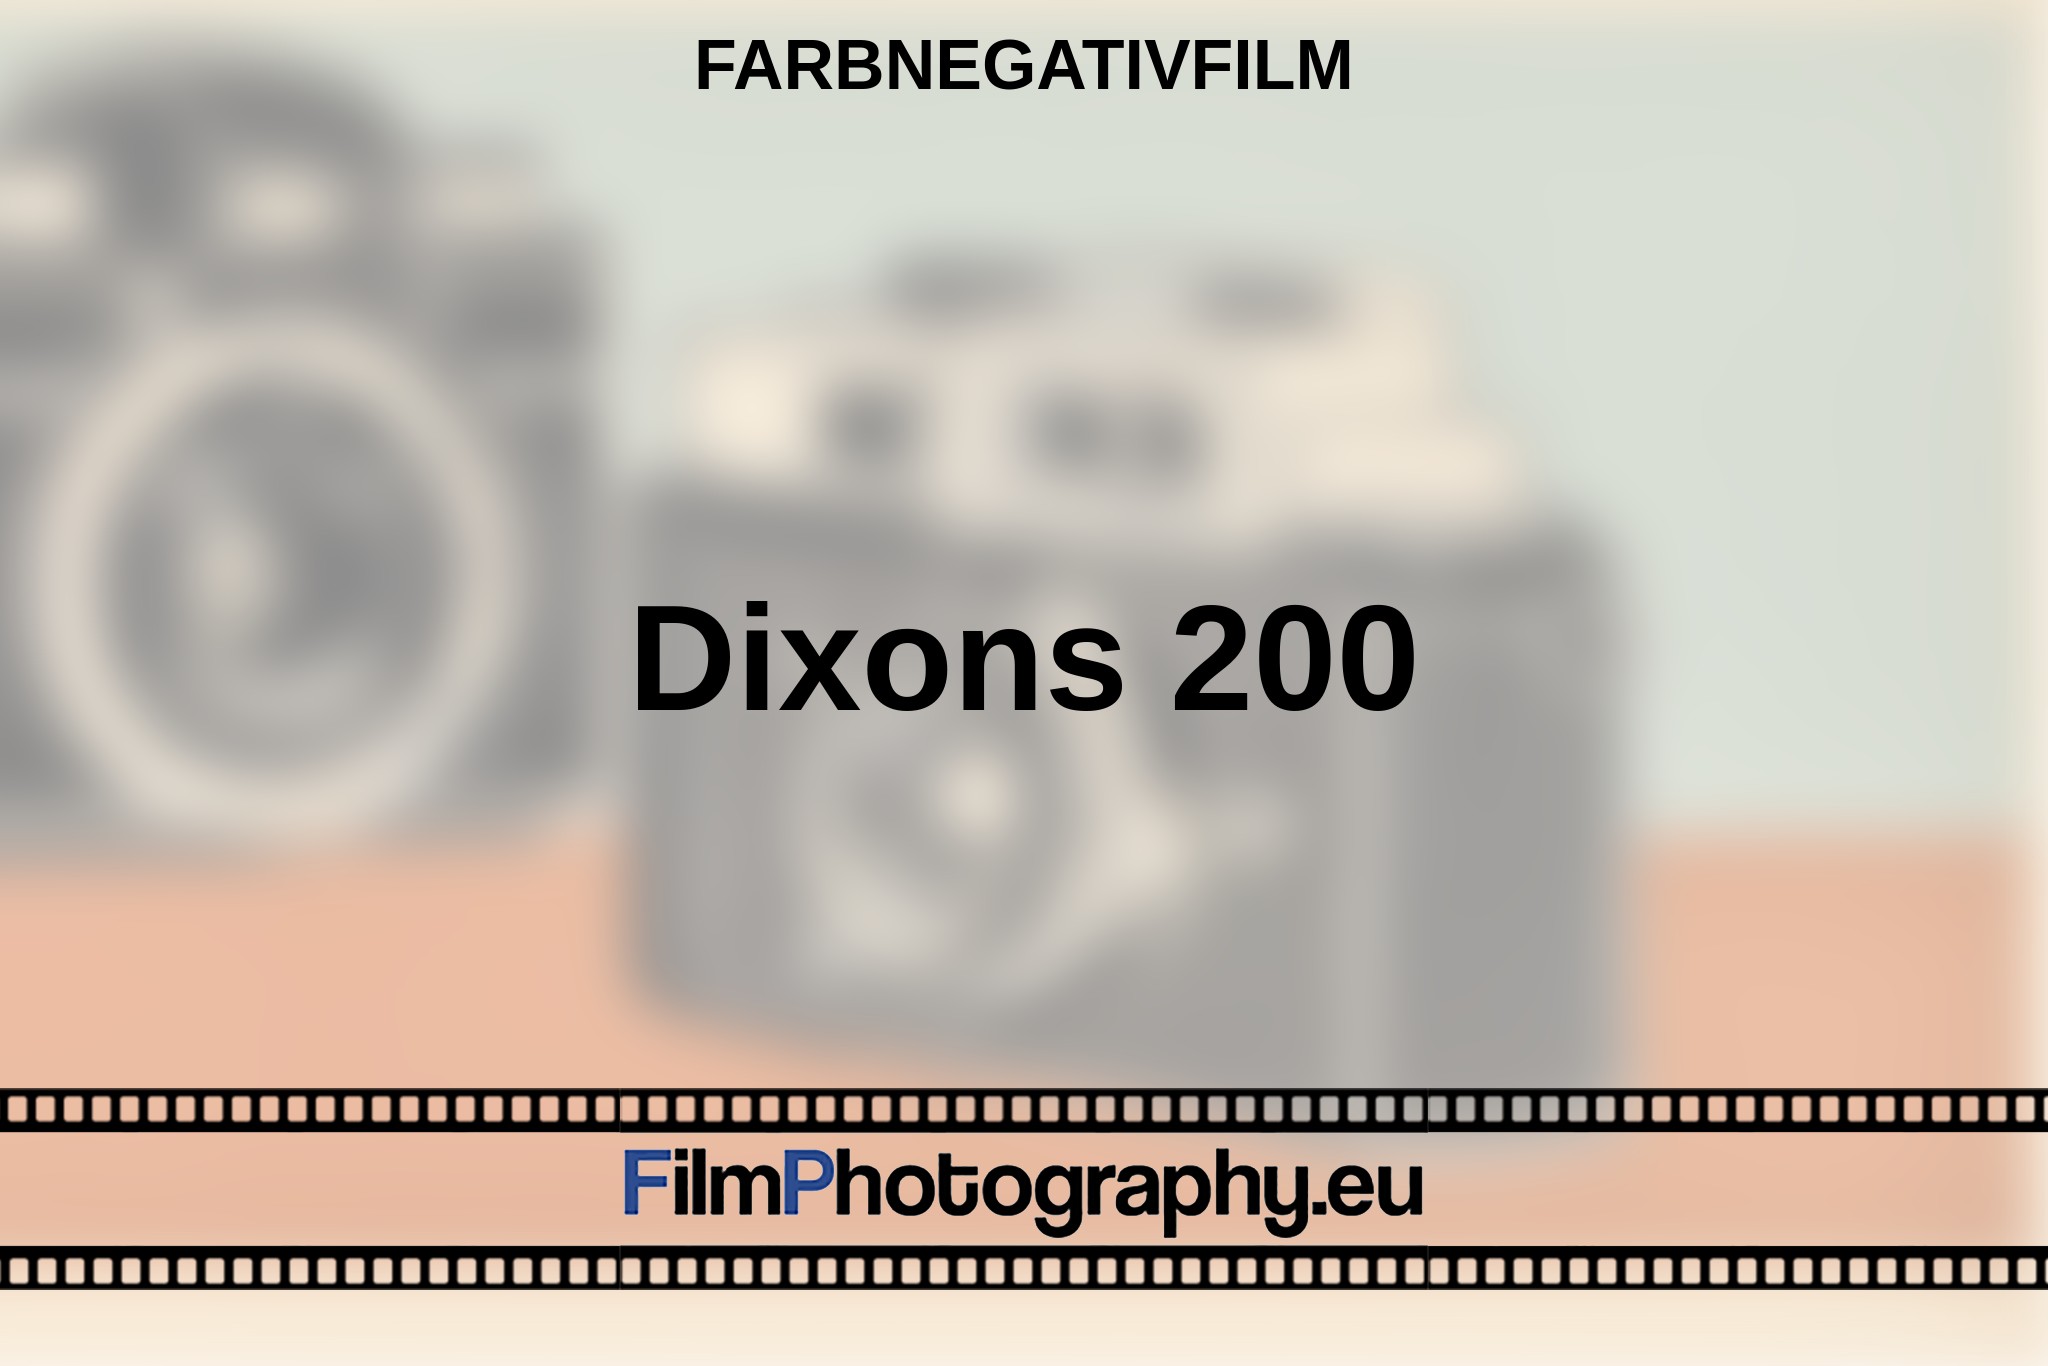 dixons-200-farbnegativfilm-bnv.jpg